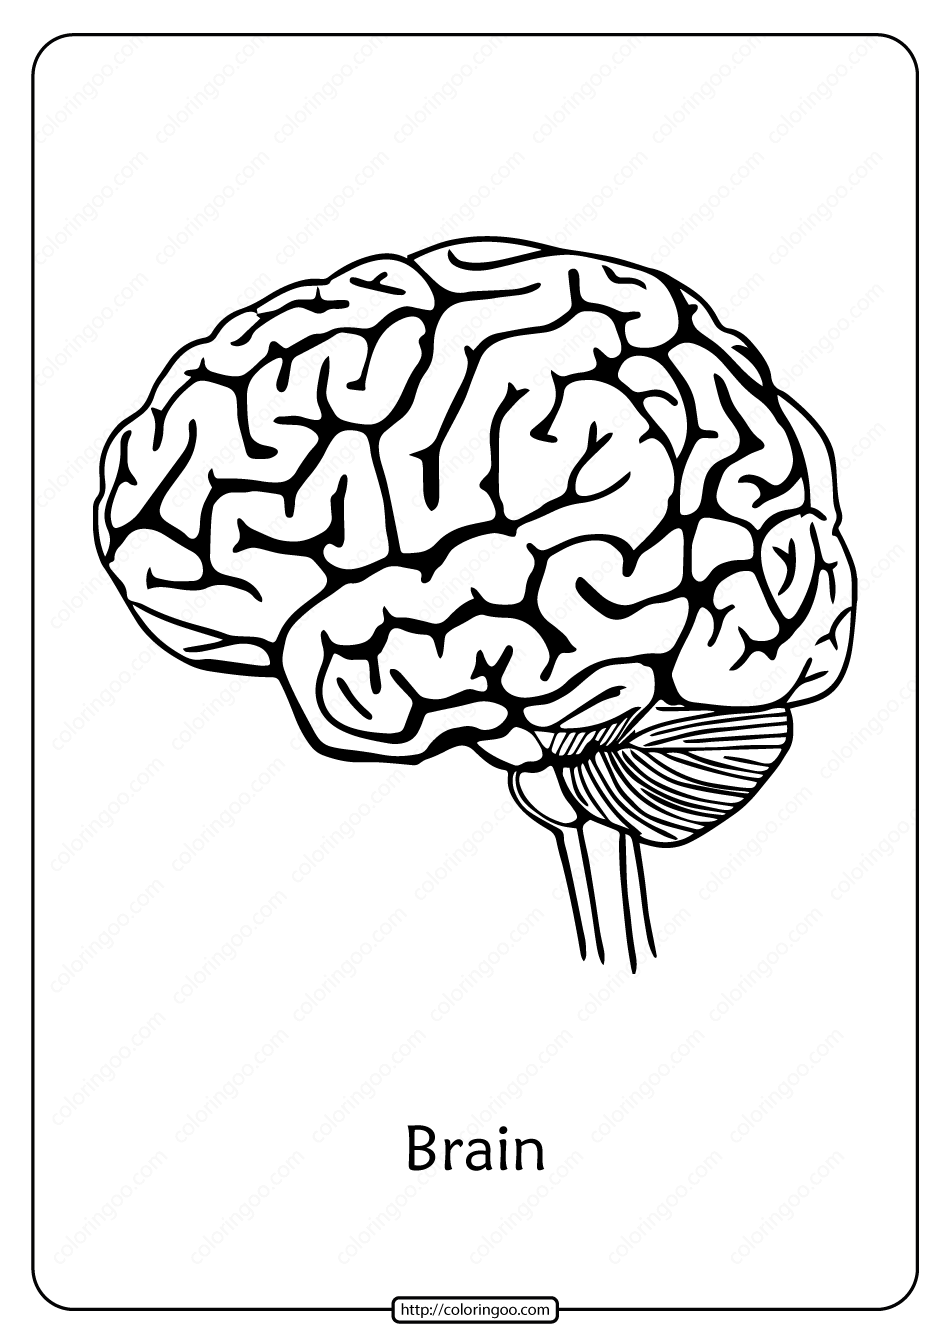 Мозг схематично